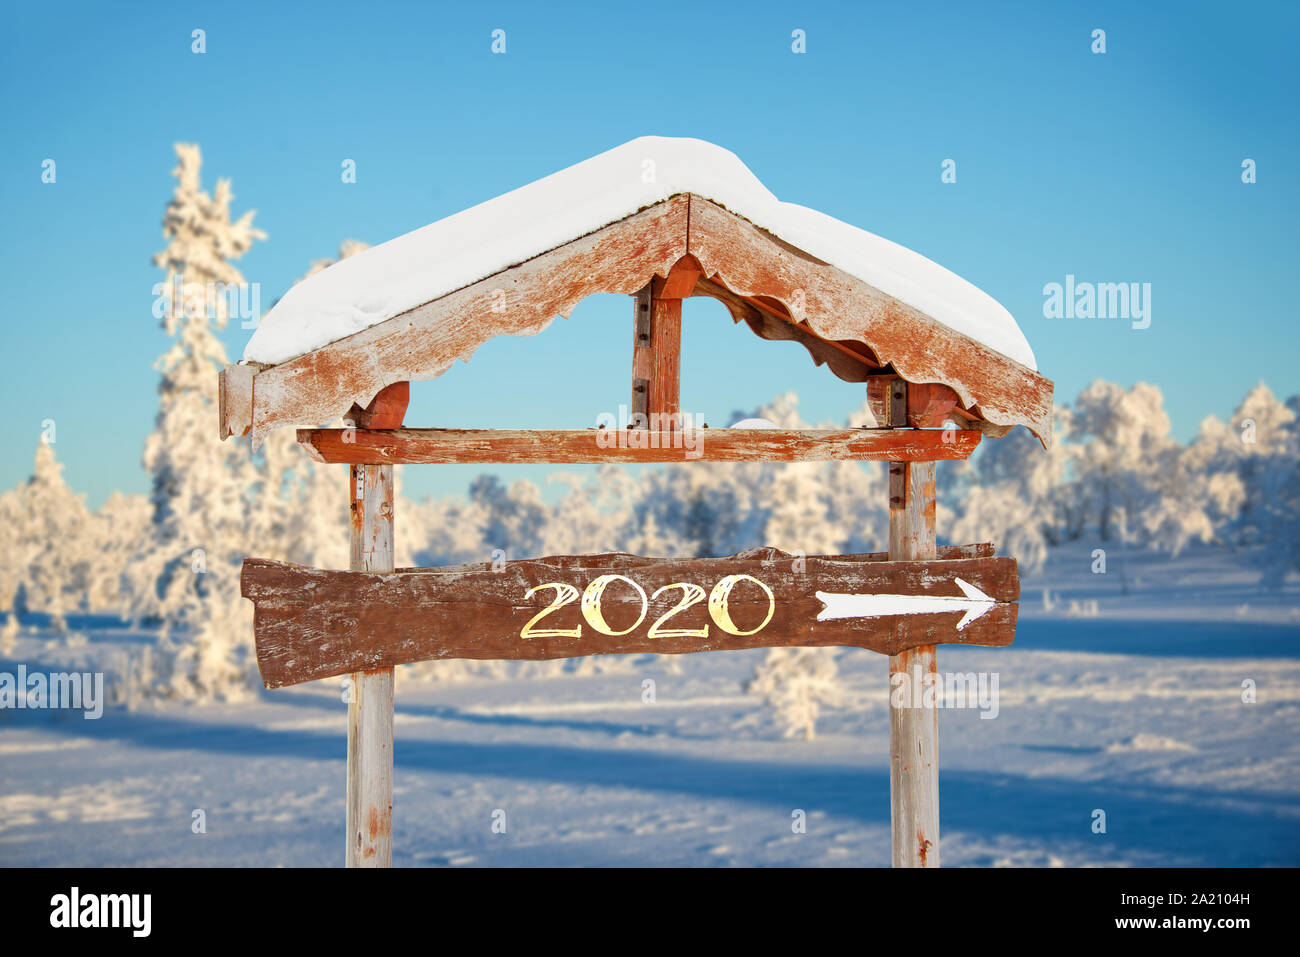 2020 auf einer hölzernen Richtung Zeichen, blauem Himmel und im Winter verschneite baum landschaft Hintergrund happy holiday seasons Neujahrsgrüße geschrieben Stockfoto